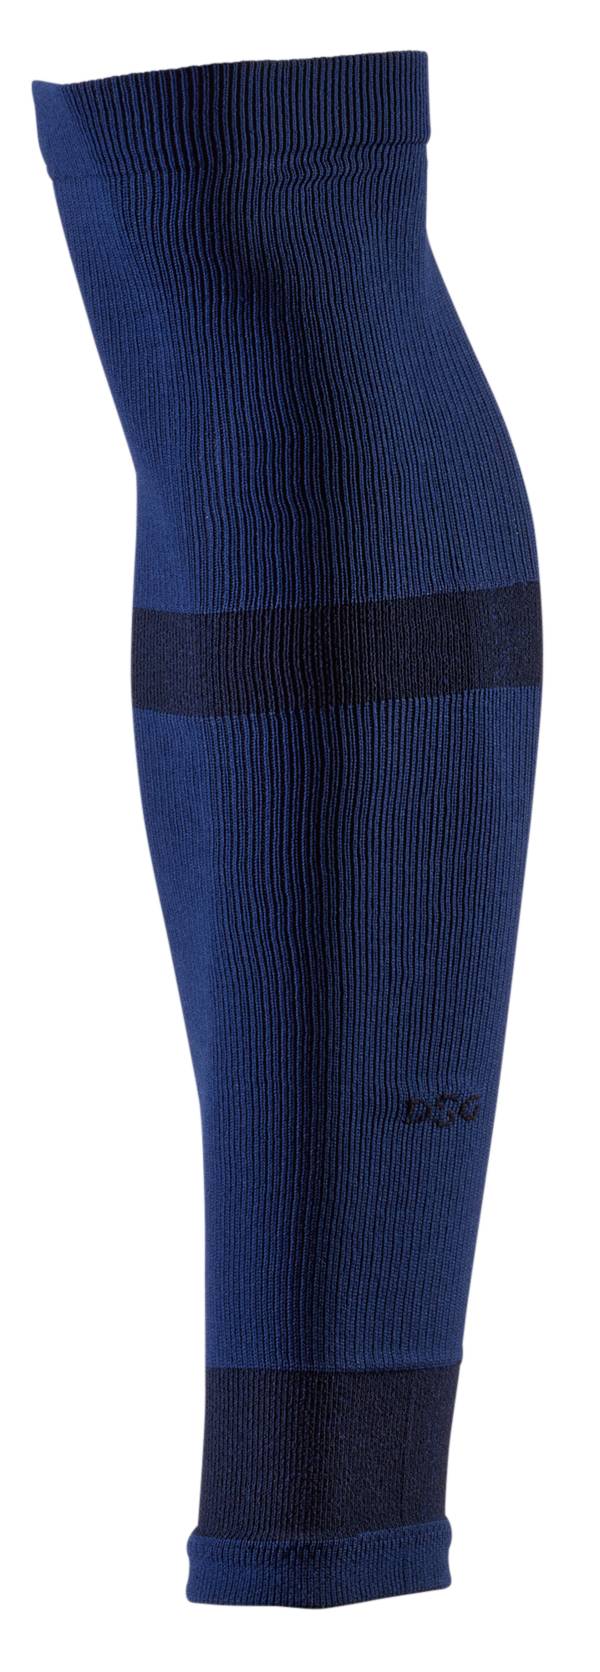 DSG Adult Soccer Leg Sleeve – 2 Pack